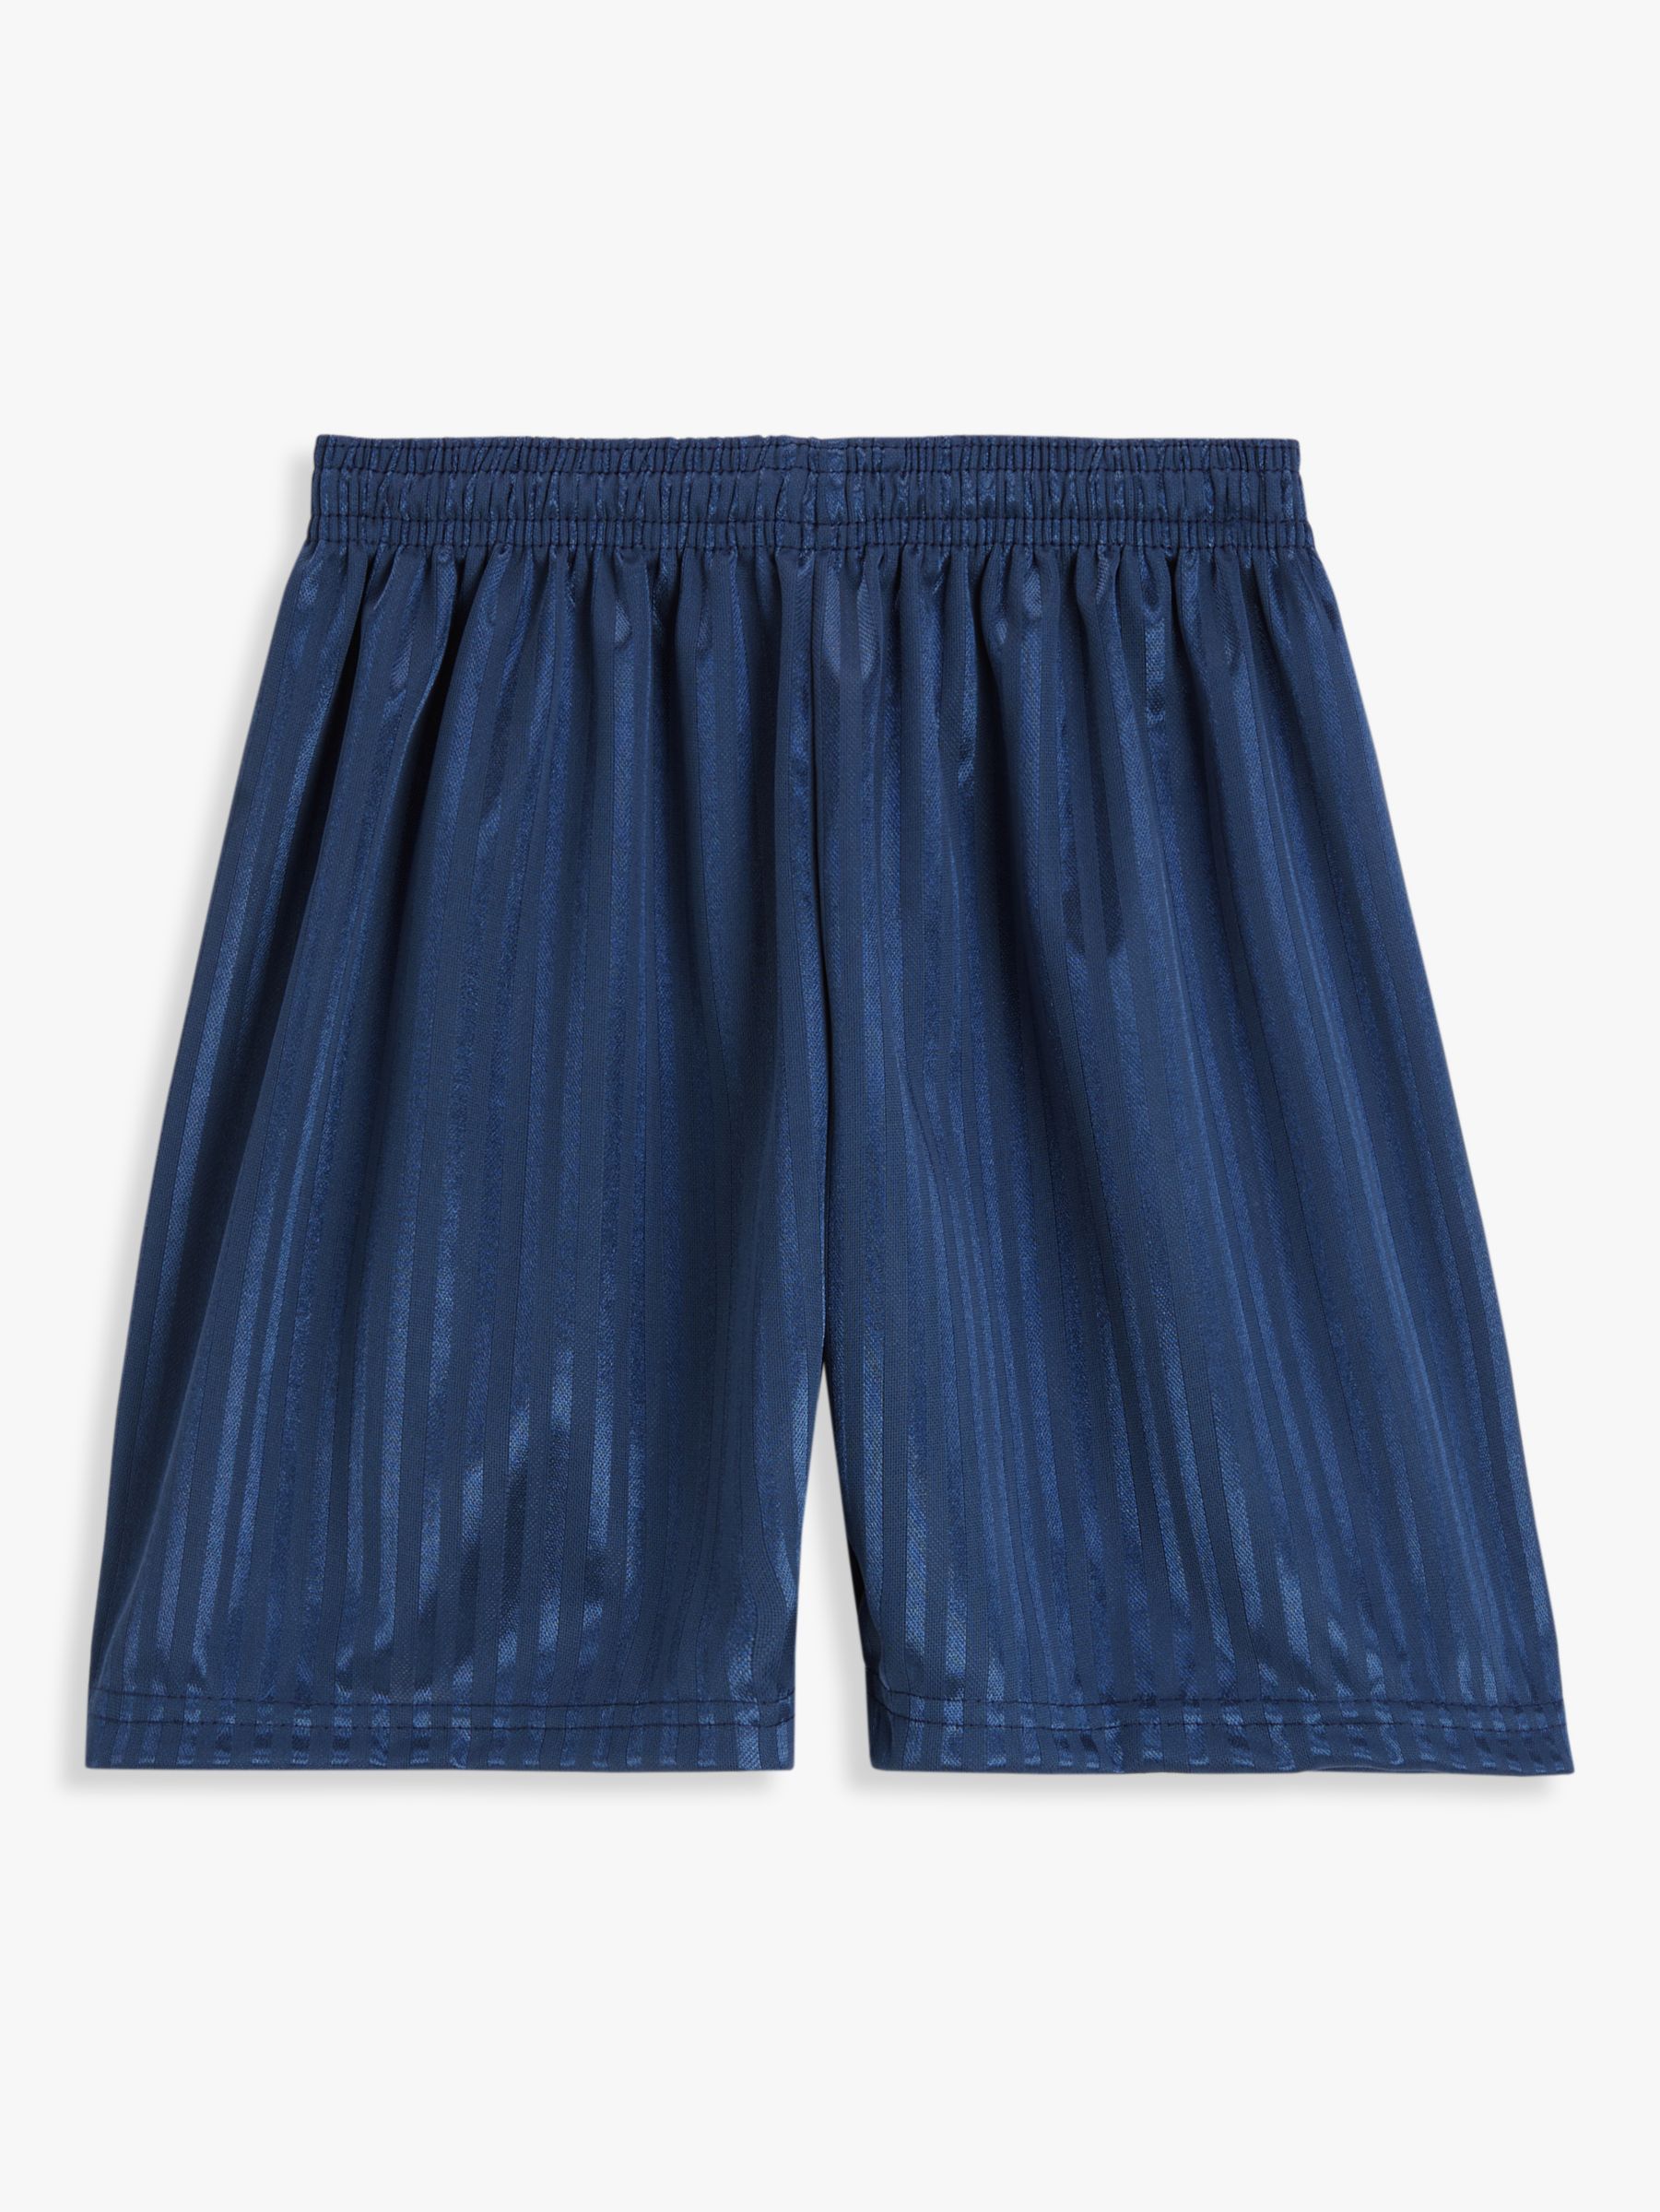 Vintage Rare Adidas Dazzle Basic 3 Stripe Basketball Shorts Navy Blue Shiny  S